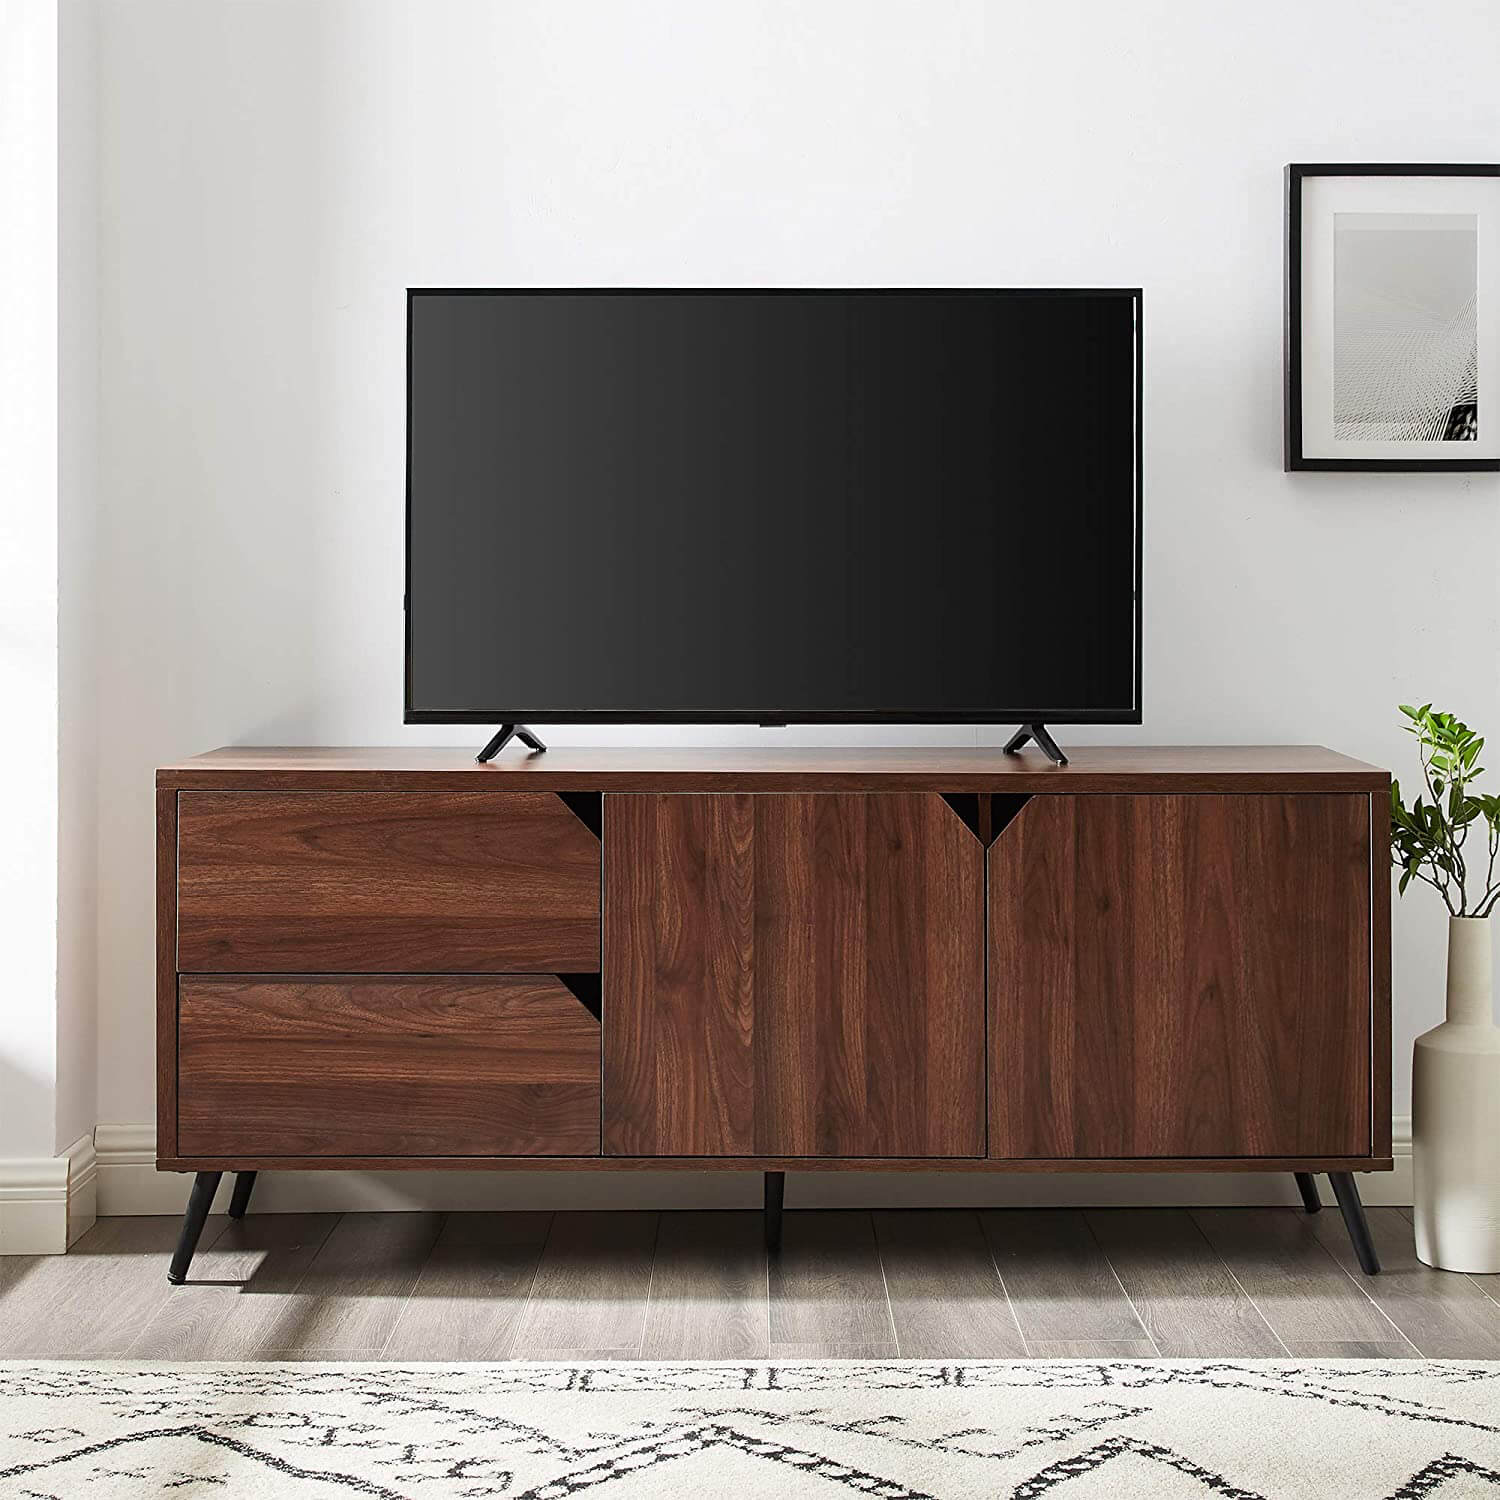 Soporte de TV de madera con gabinetes y cajones para televisores de pantalla plana de hasta 64" Consola de TV universal Estantes de almacenamiento para sala de estar Centro de entretenimiento